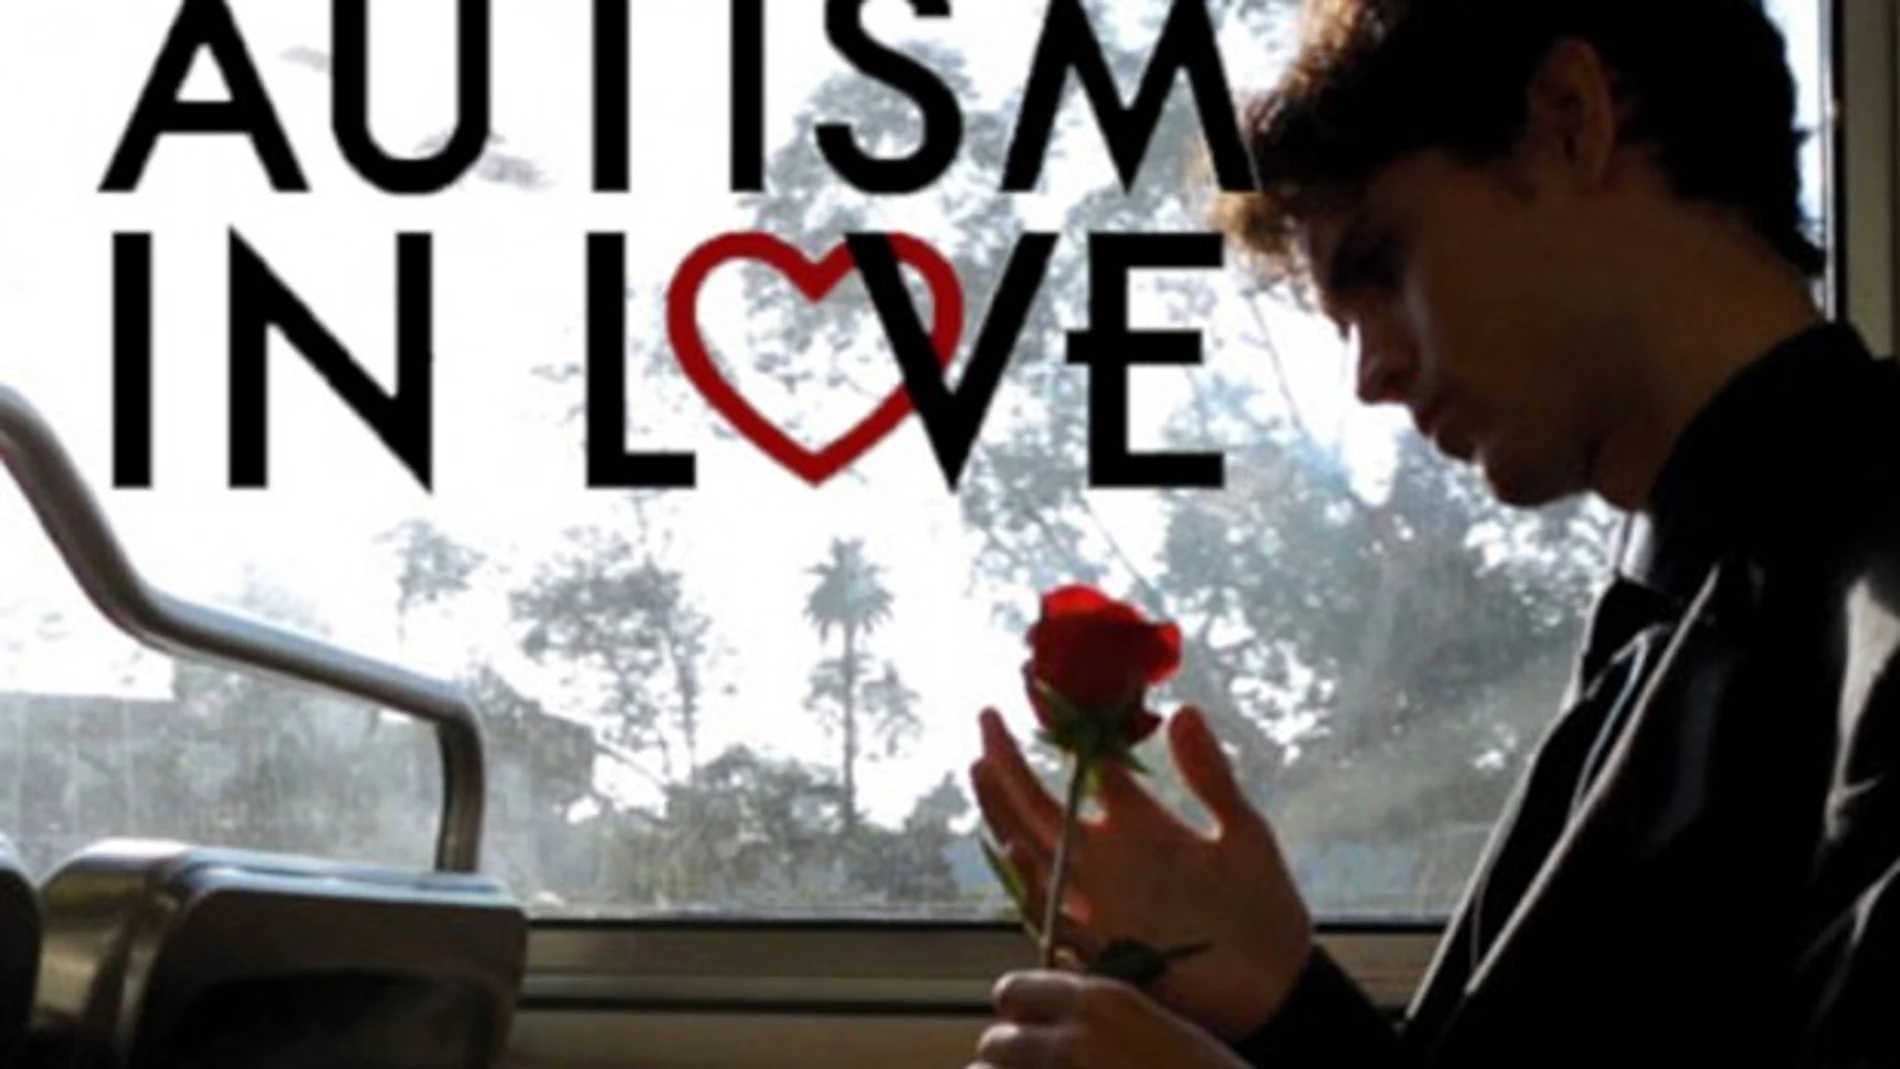 ¿Cómo son las relaciones sentimentales entre autistas?